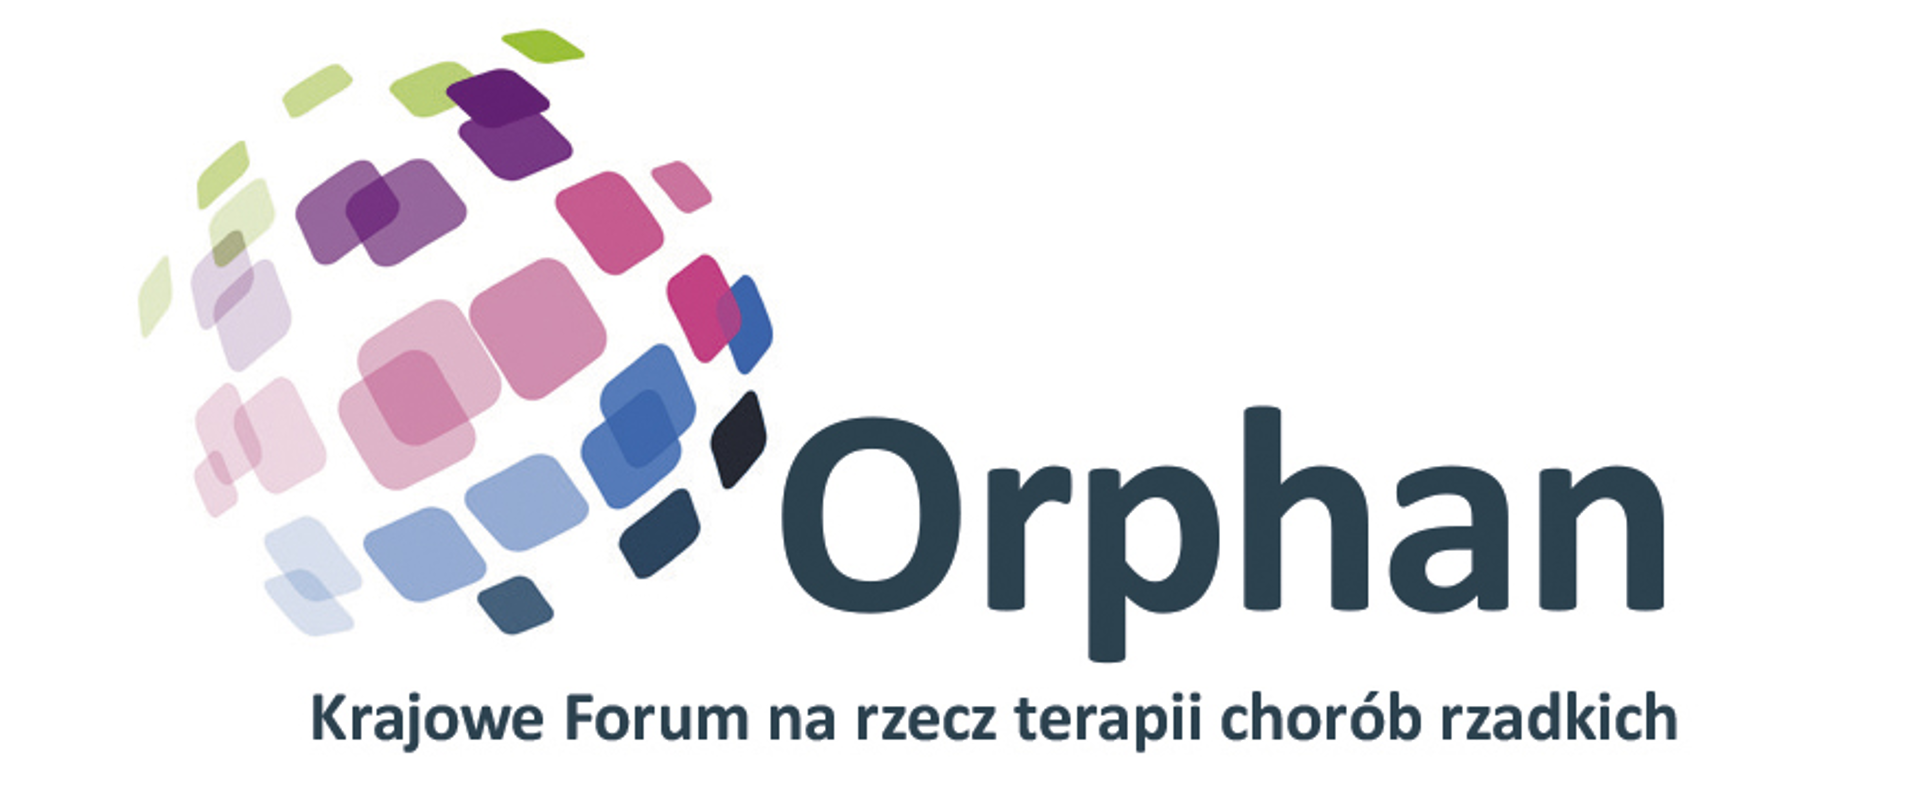 Krajowe Forum ORPHAN